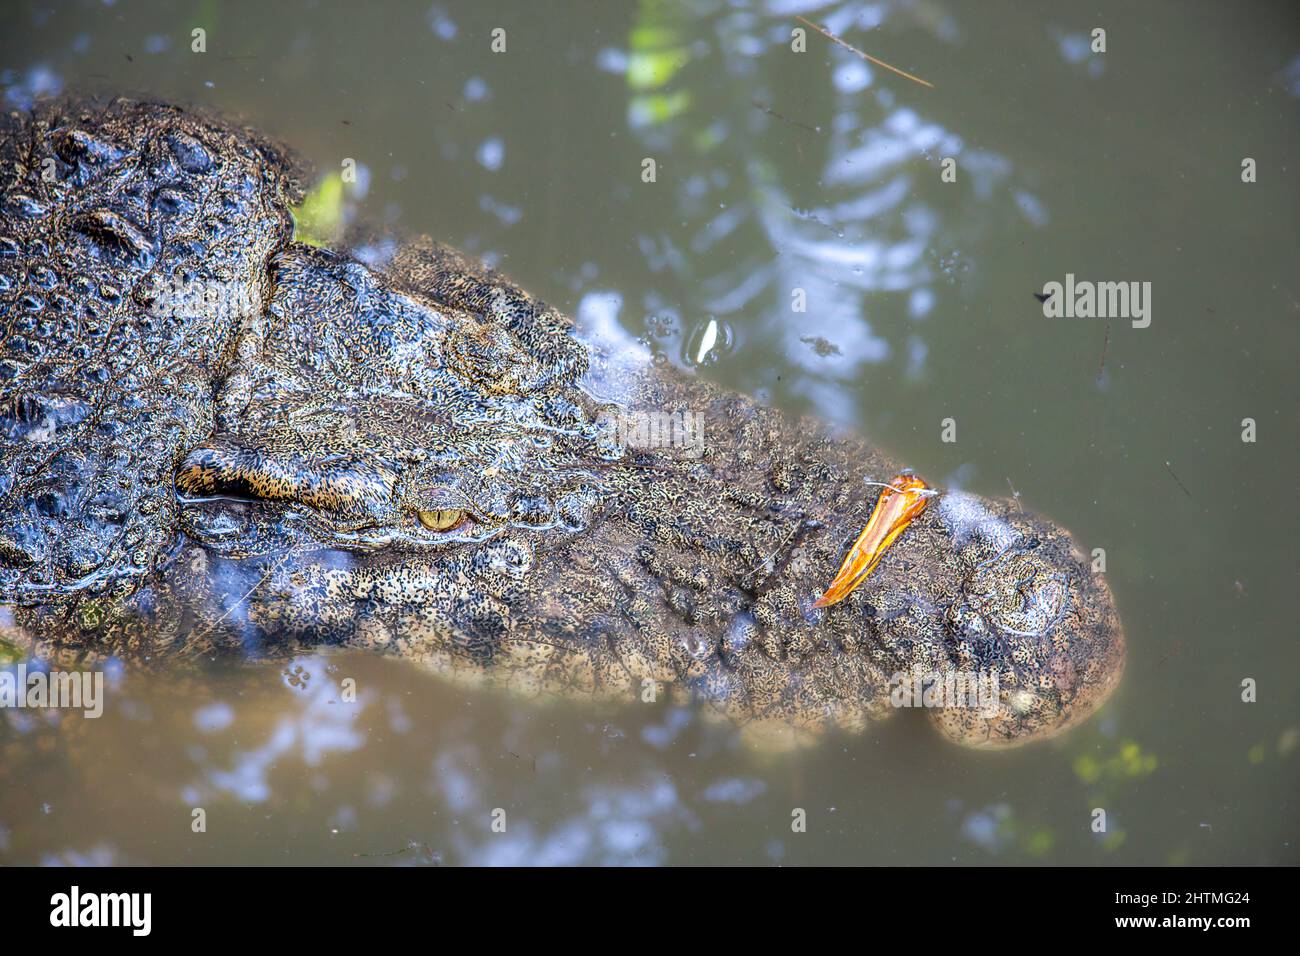 El cocodrilo de agua salada, Crocodylus porosus, a veces se conoce como cocodrilo estuarino, Indonesia. Foto de stock